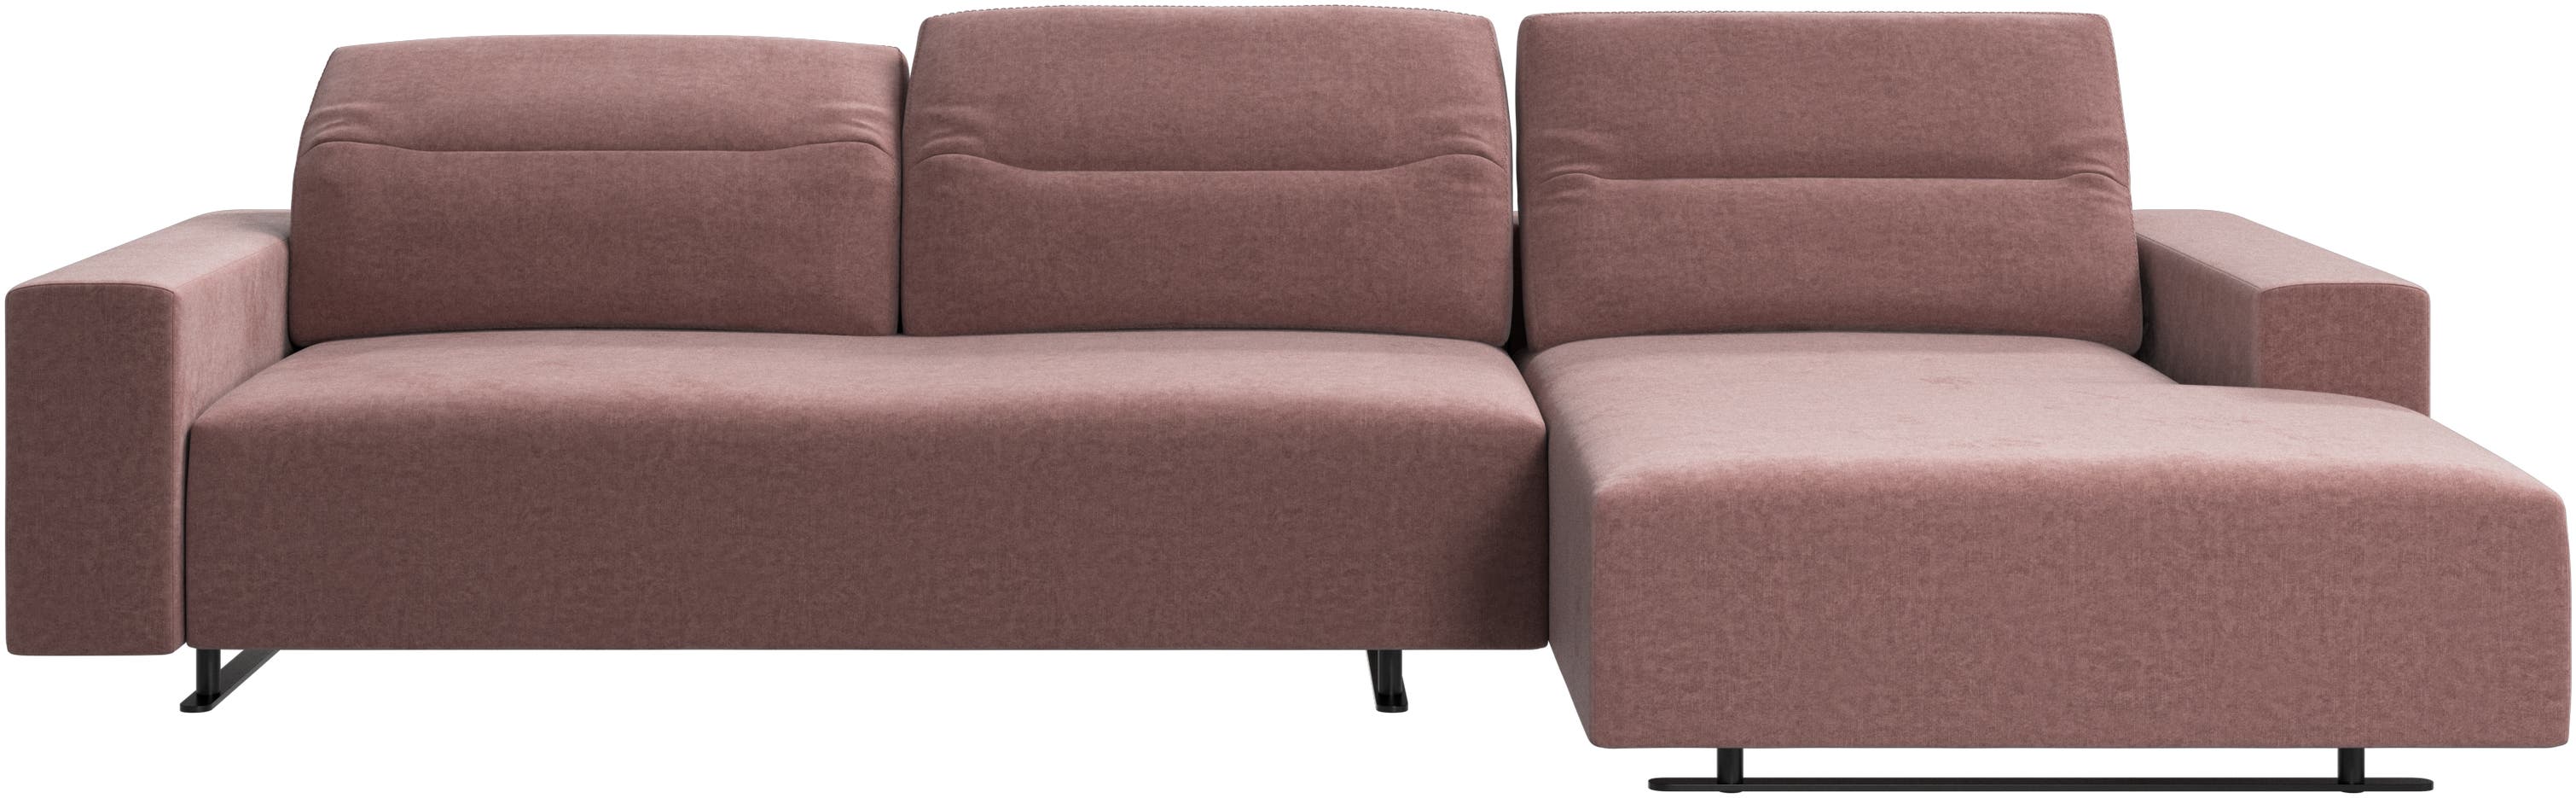 Hampton Sofa mit verstellbarem Rückenpolster und Ruhemodul rechts